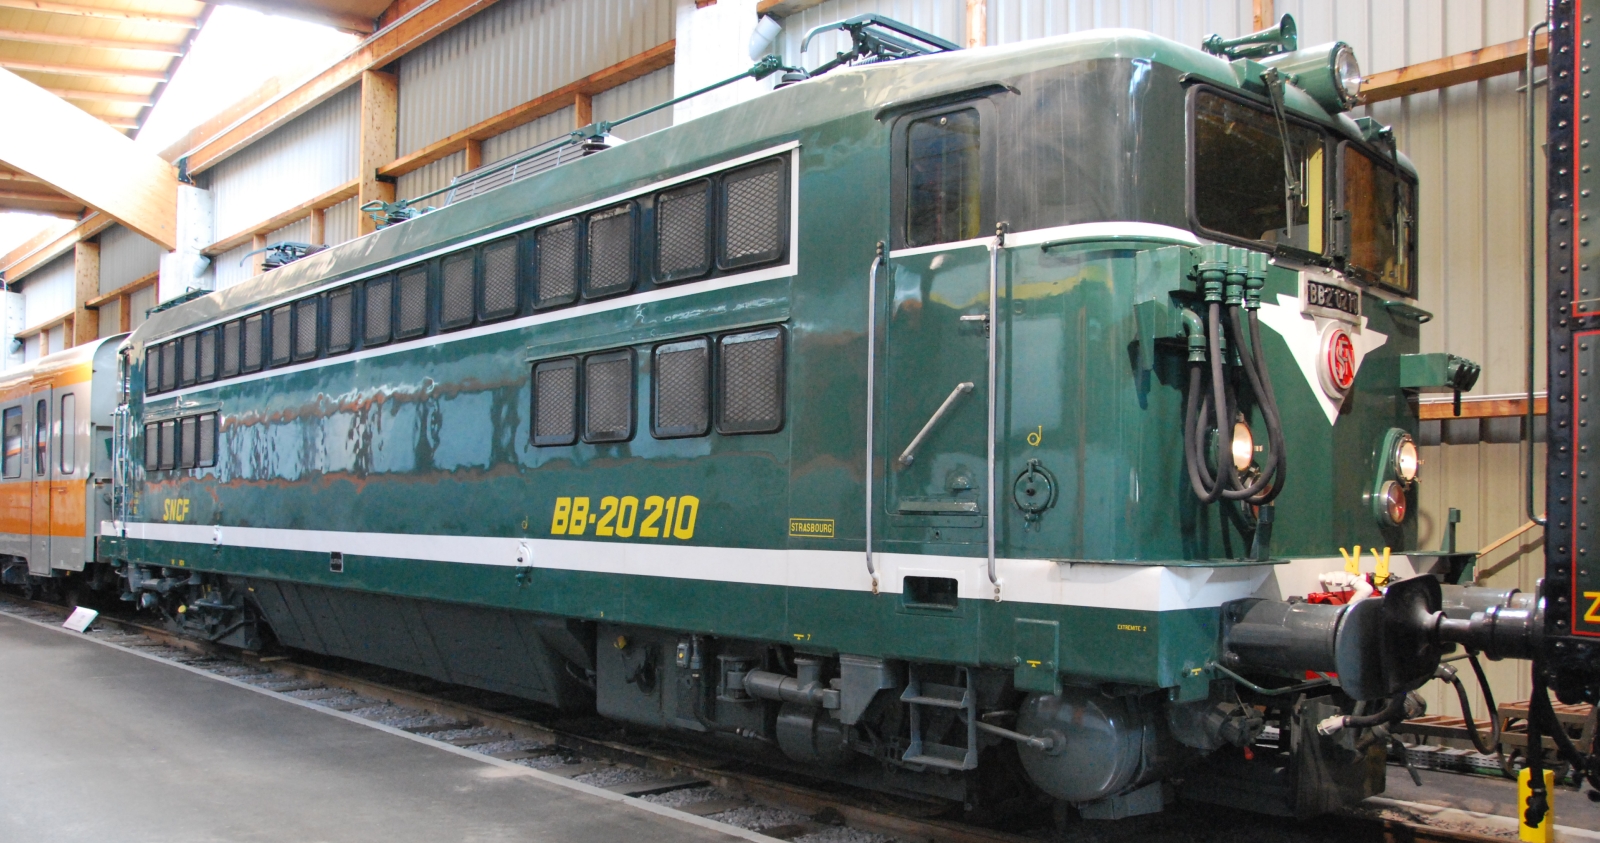 BB 20210 in the “Cité du Train” in Mulhouse